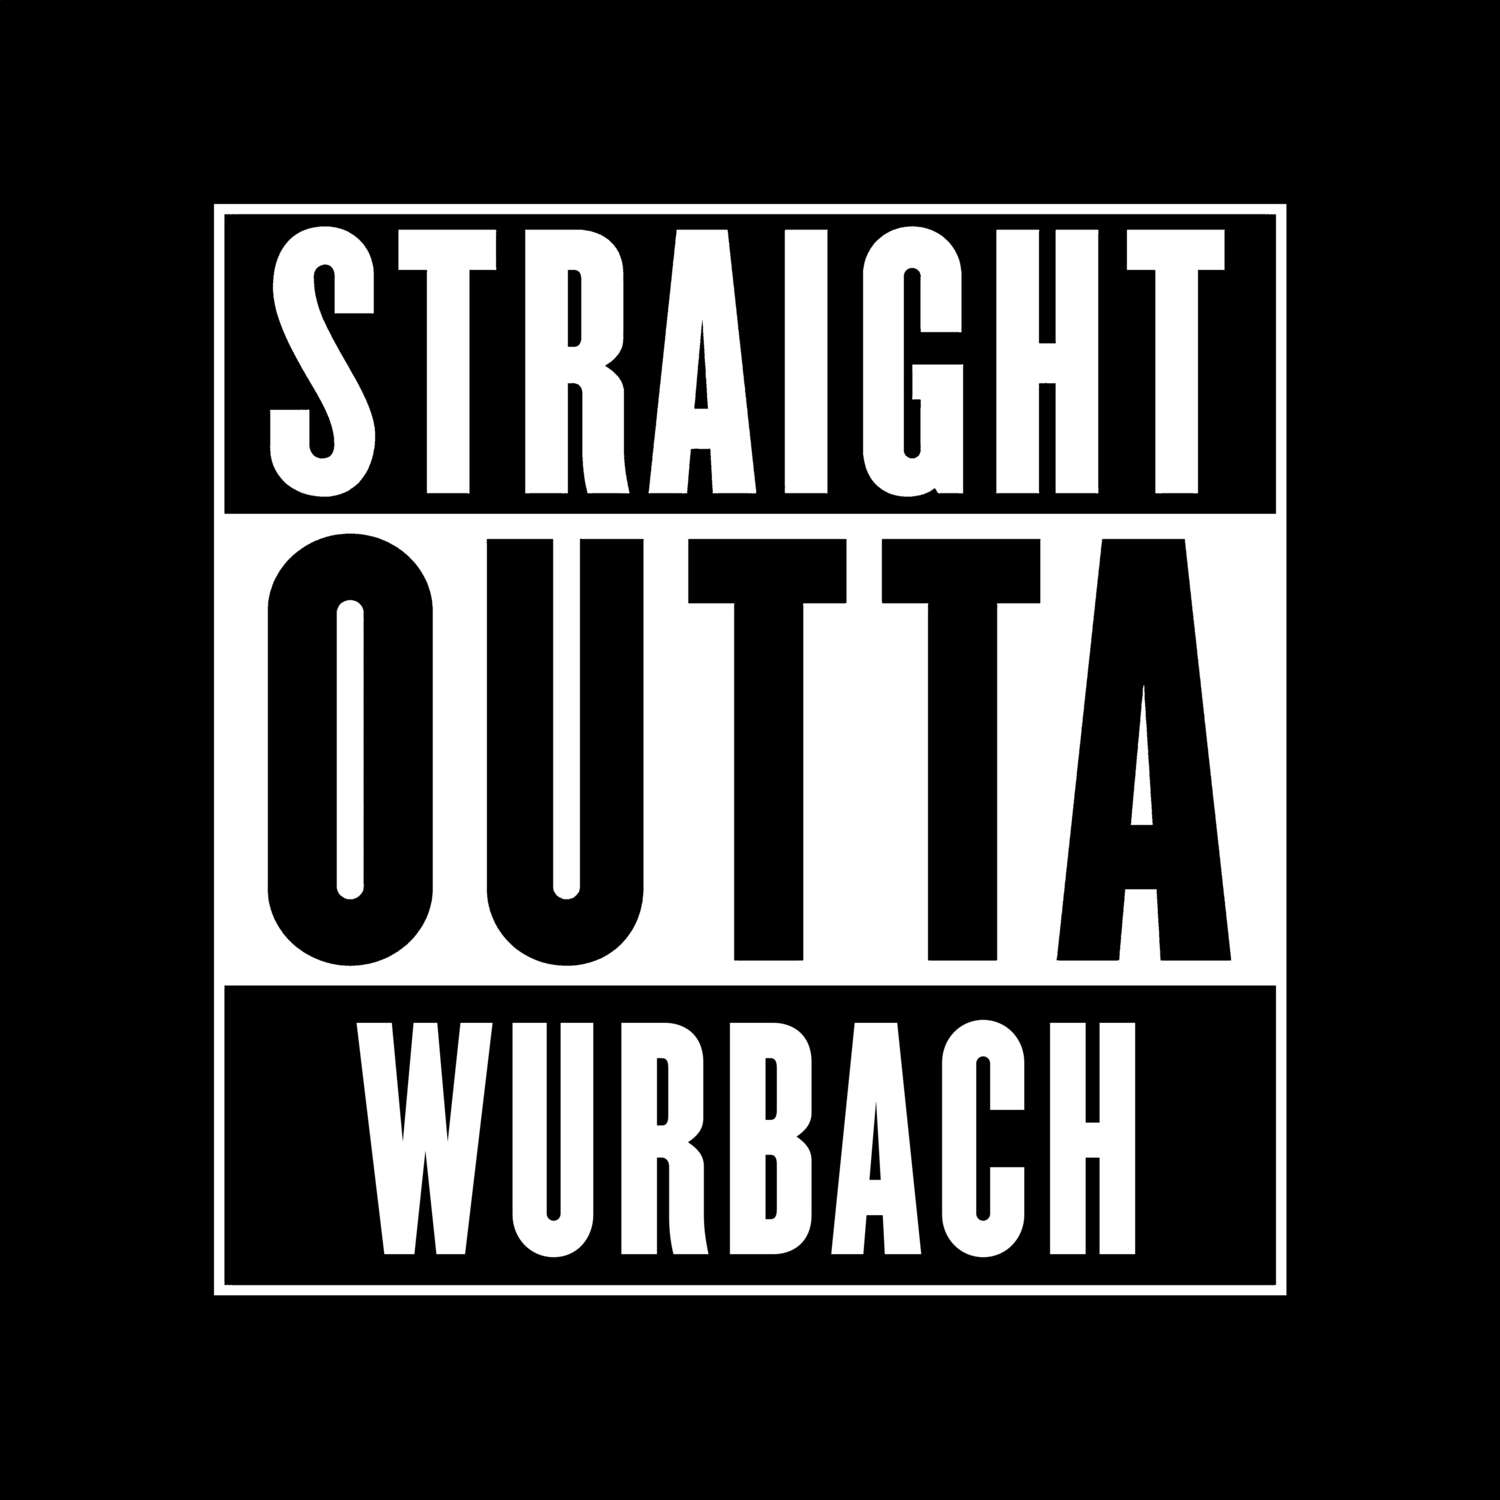 Wurbach T-Shirt »Straight Outta«